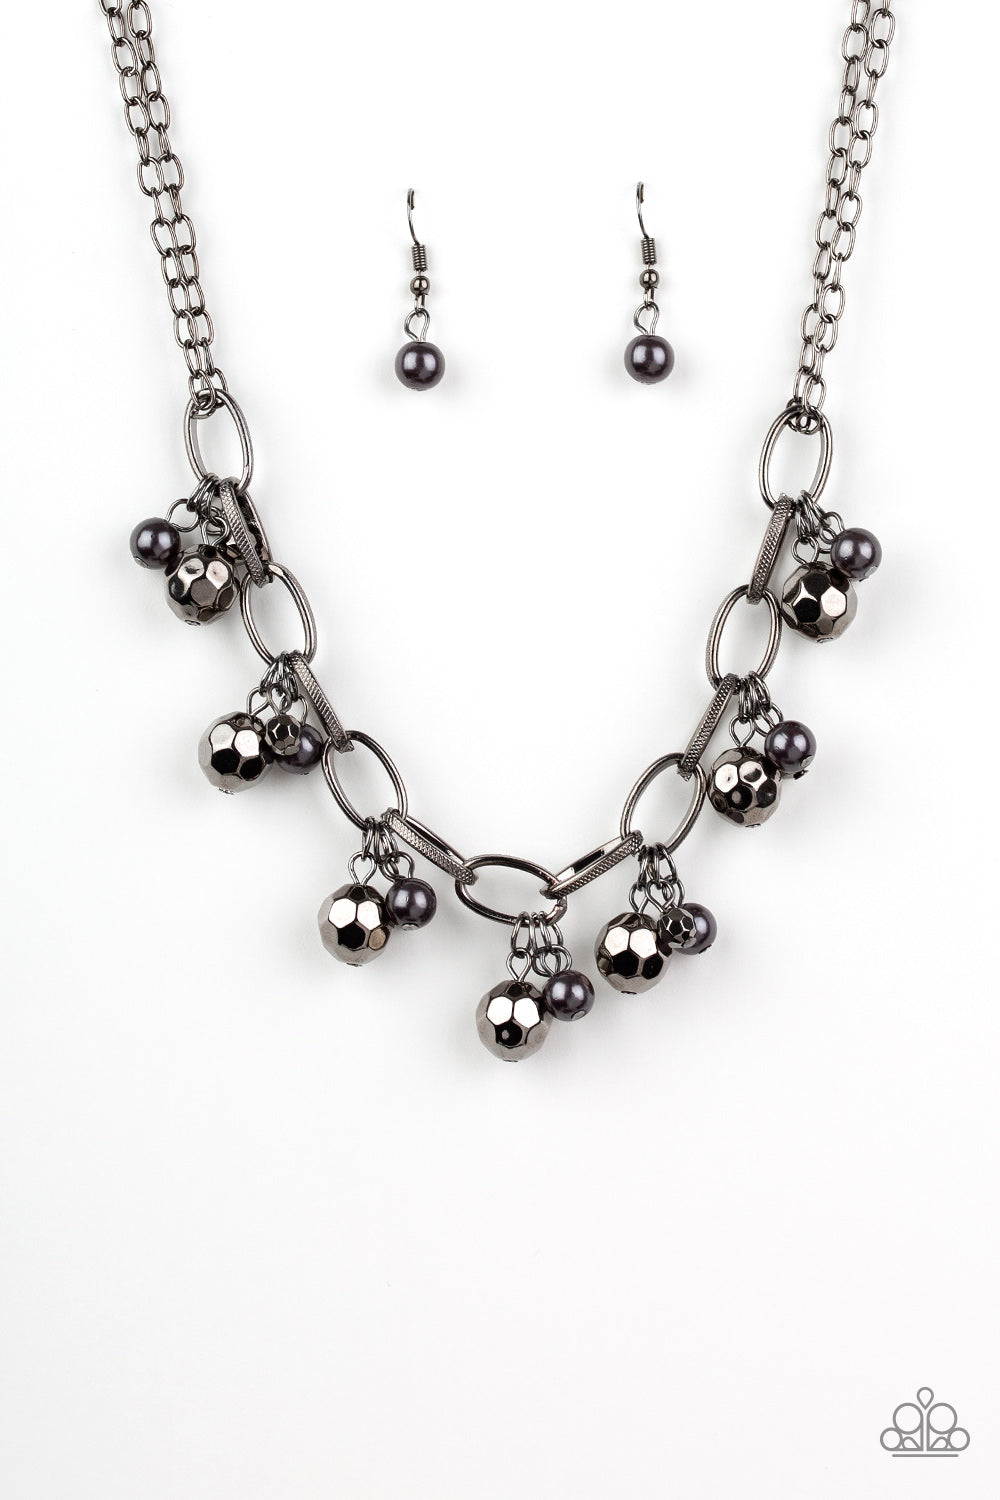 Paparazzi Malibu Movement - Black Necklace - A Finishing Touch Jewelry